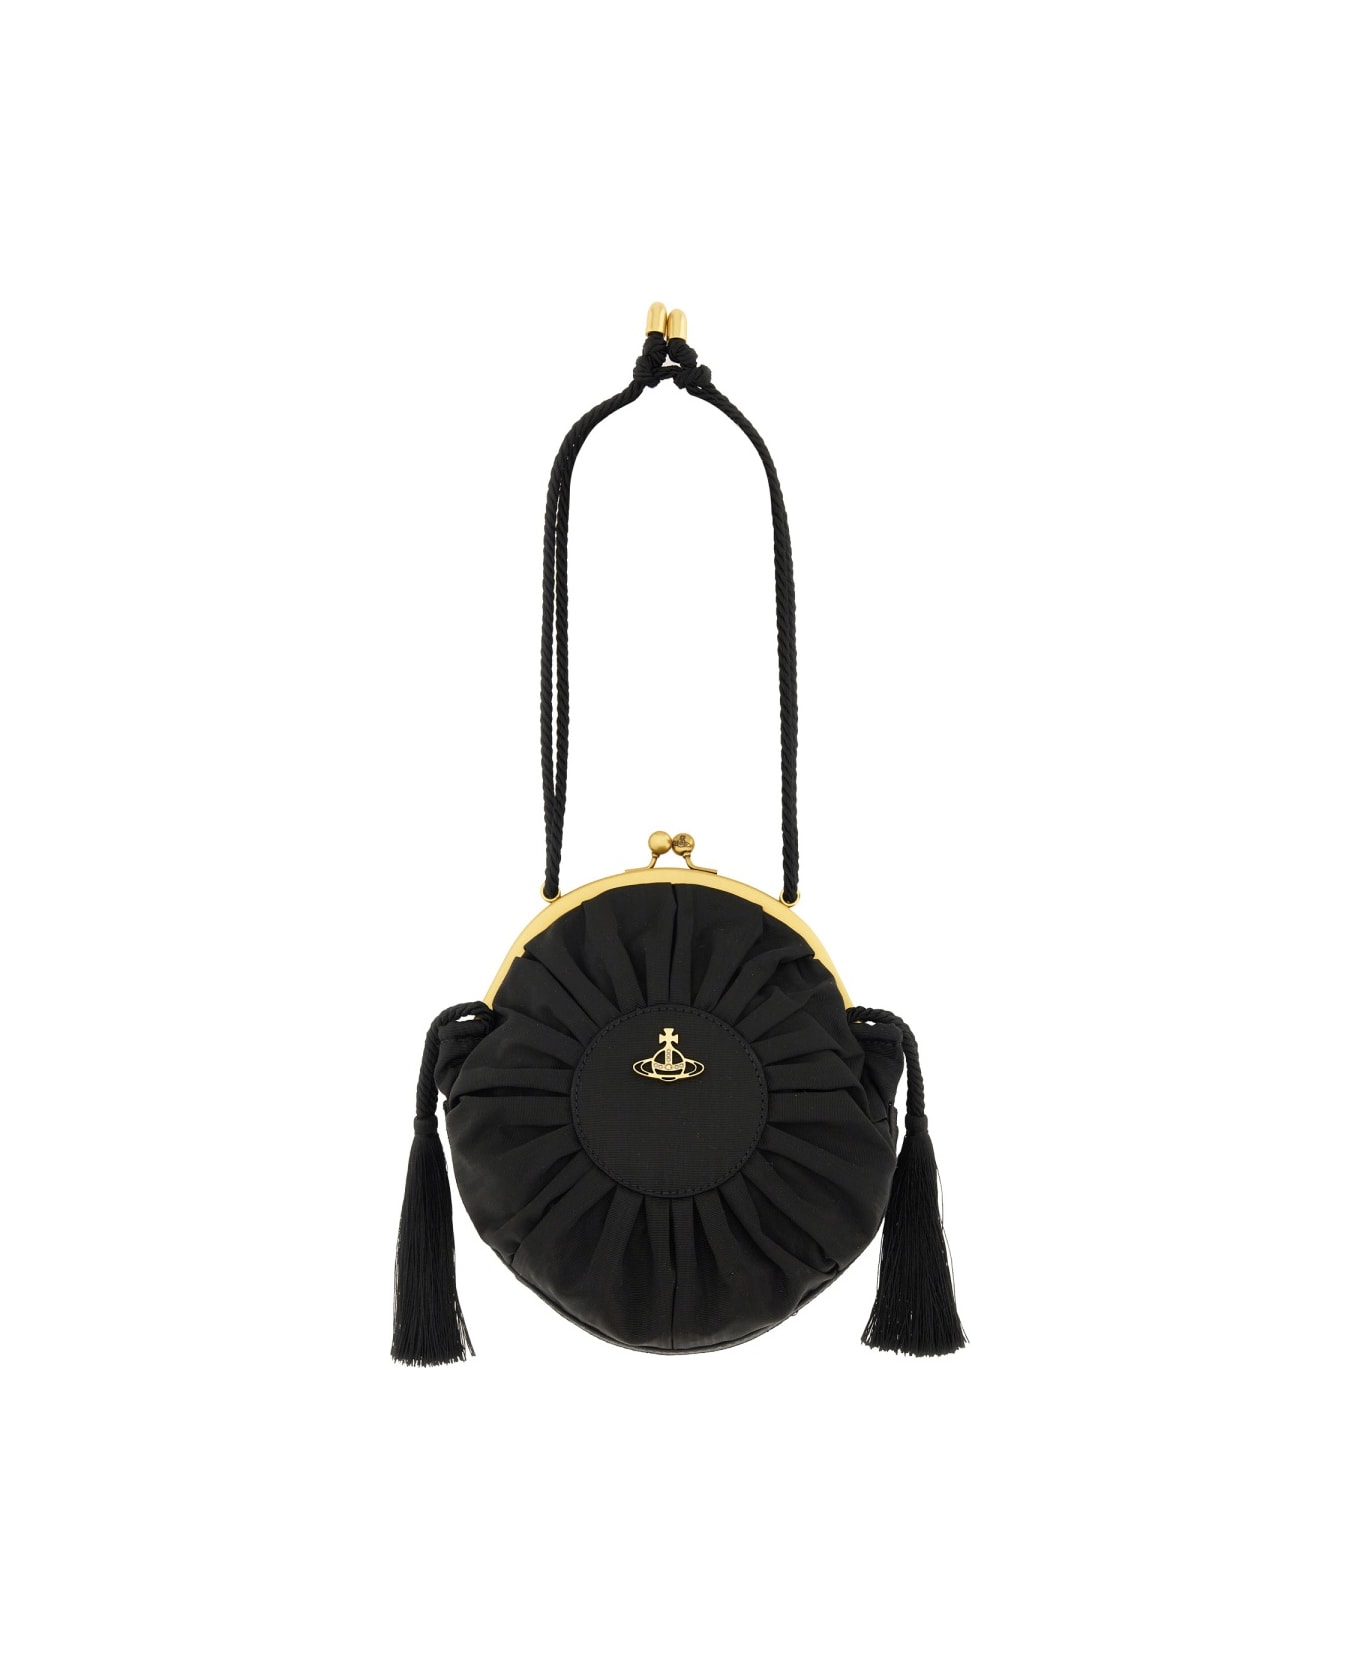 Vivienne Westwood Bag "rosie" - BLACK ショルダーバッグ